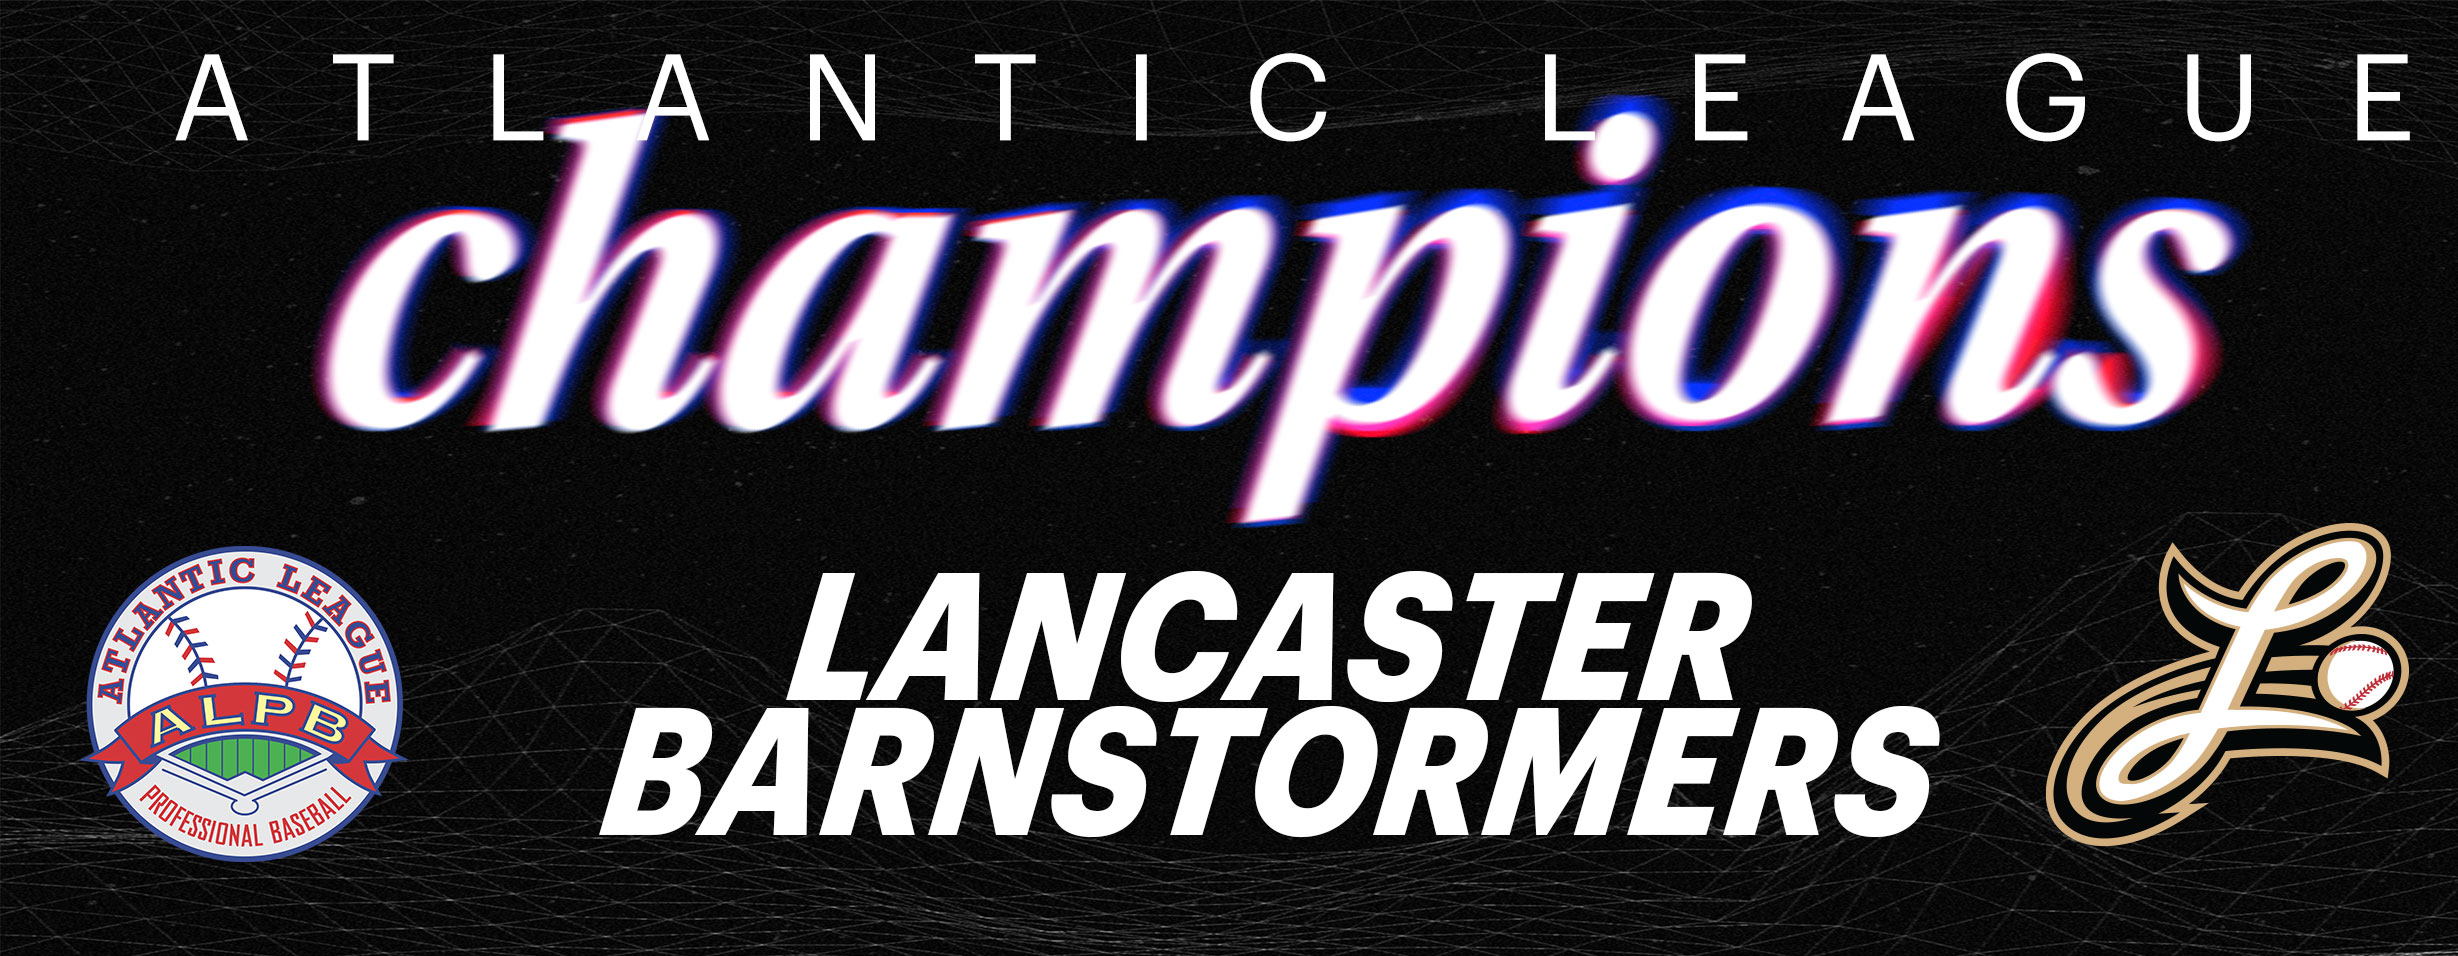 Lancaster claims ALPB title